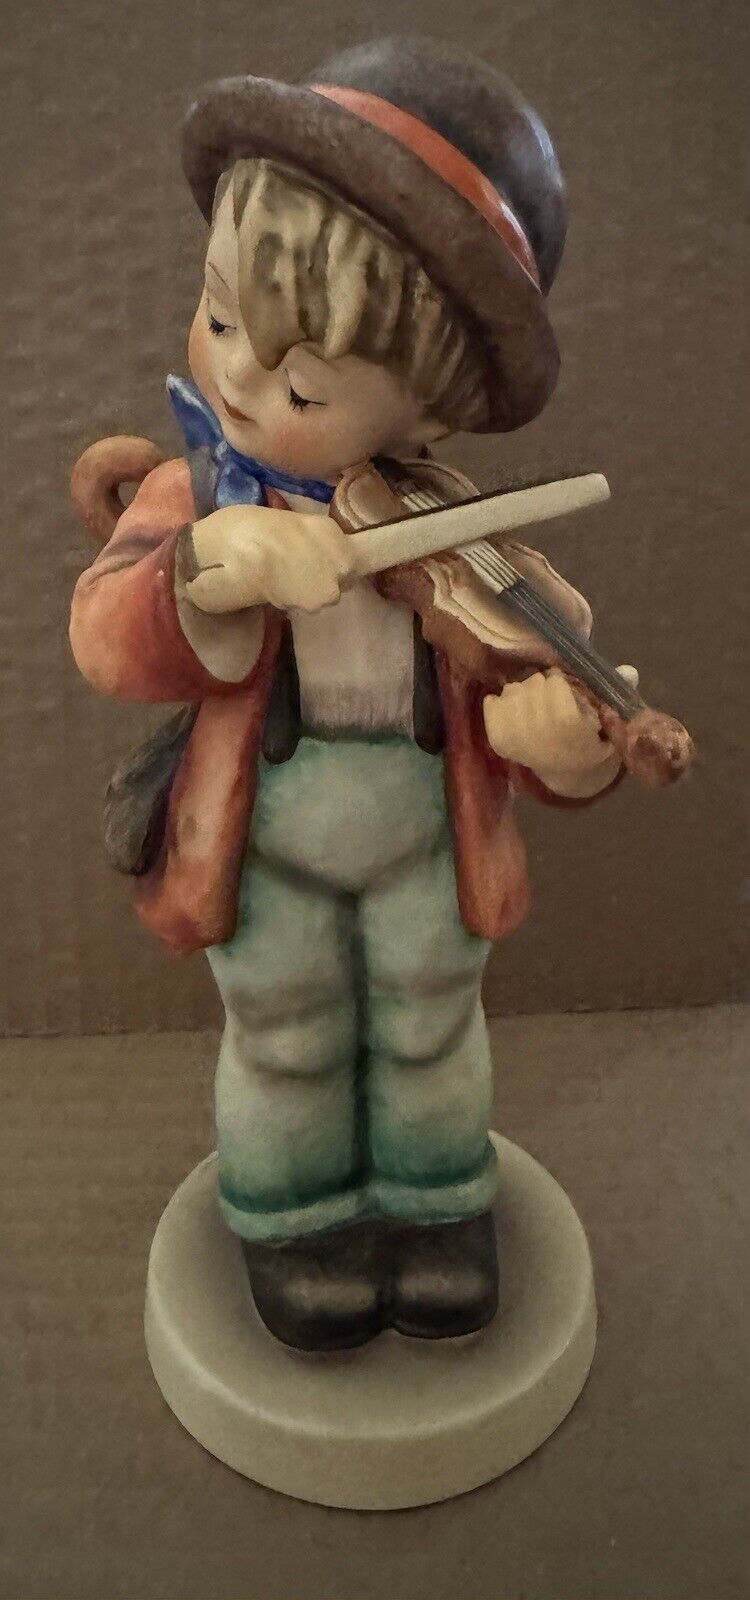 Vintage Goebel Hummel Figurine 8” Little Fiddler